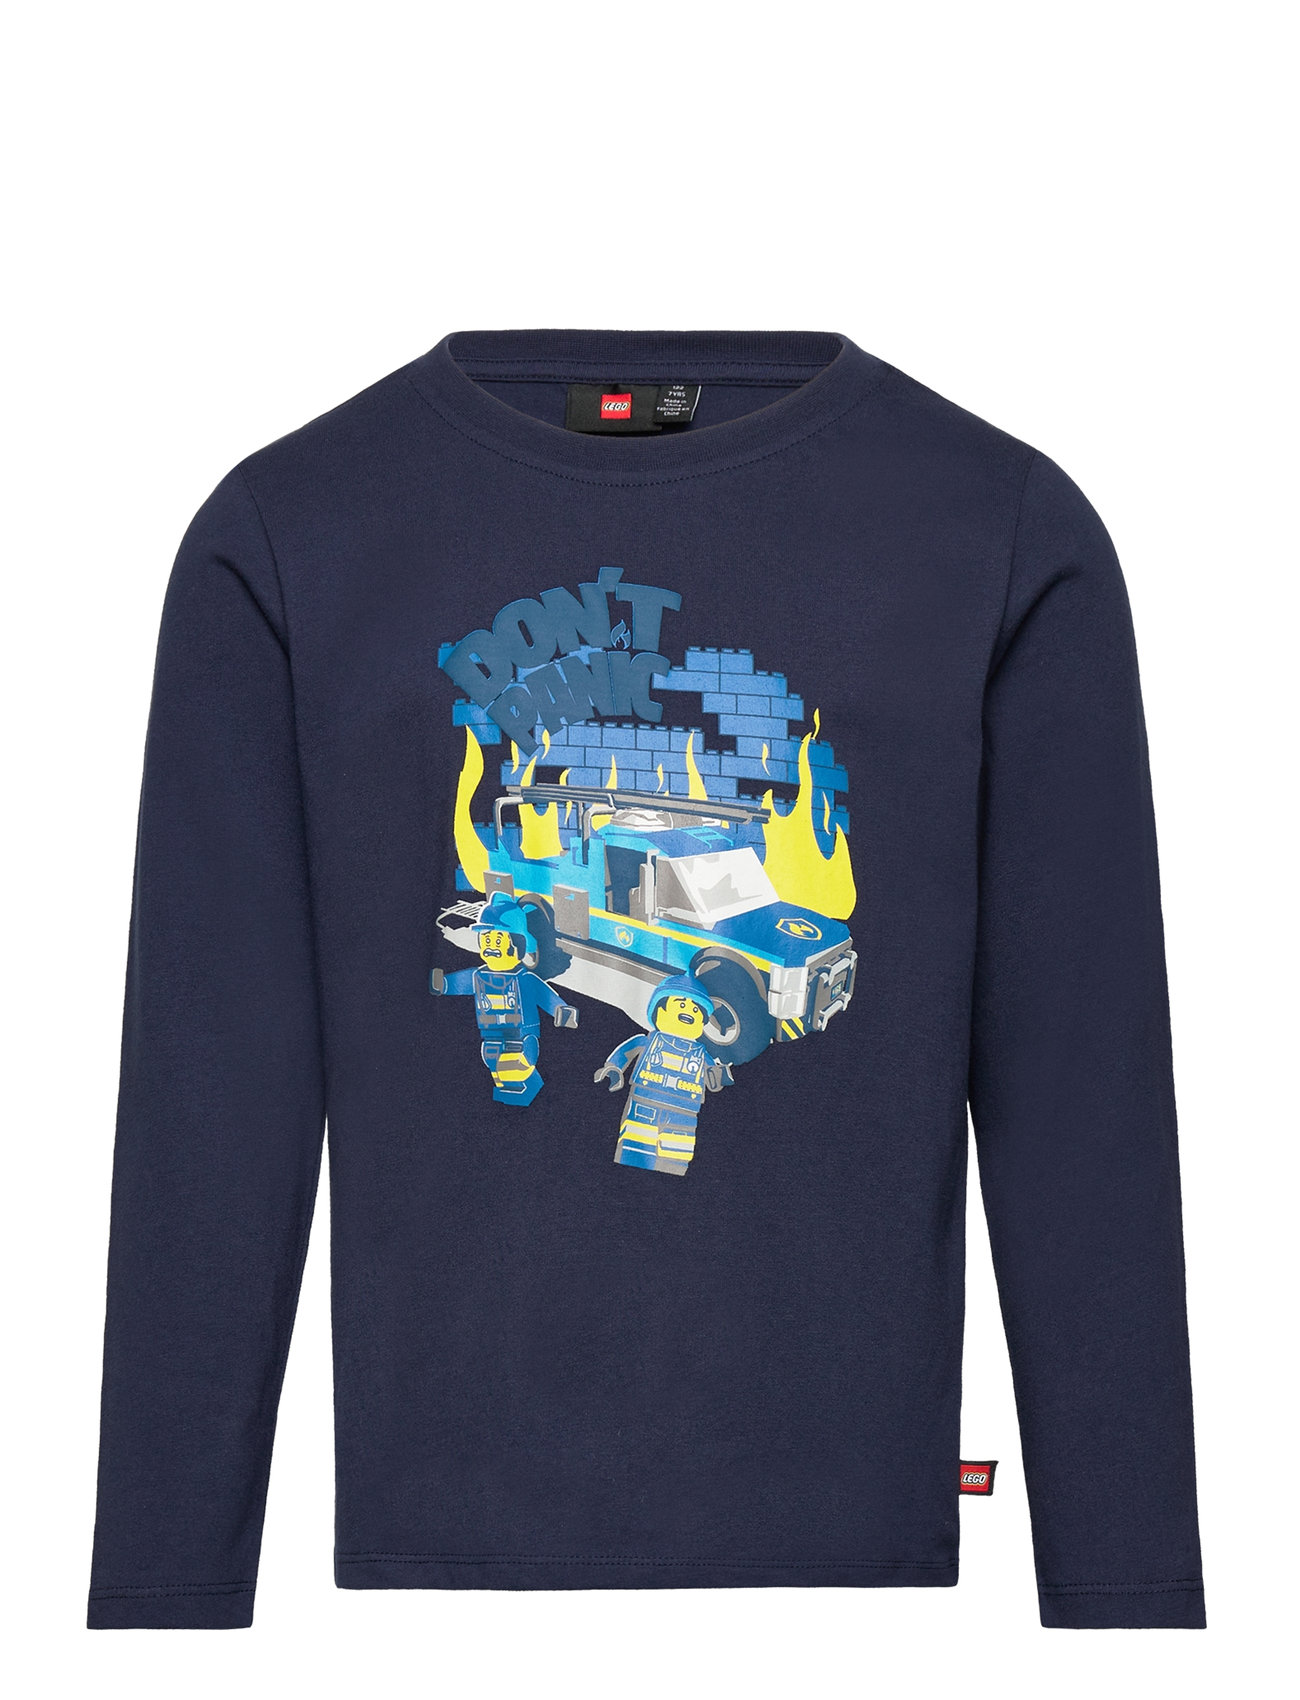 at Lwtano shop Booztlet tops T-shirt – – LEGO 123 kidswear - L/s